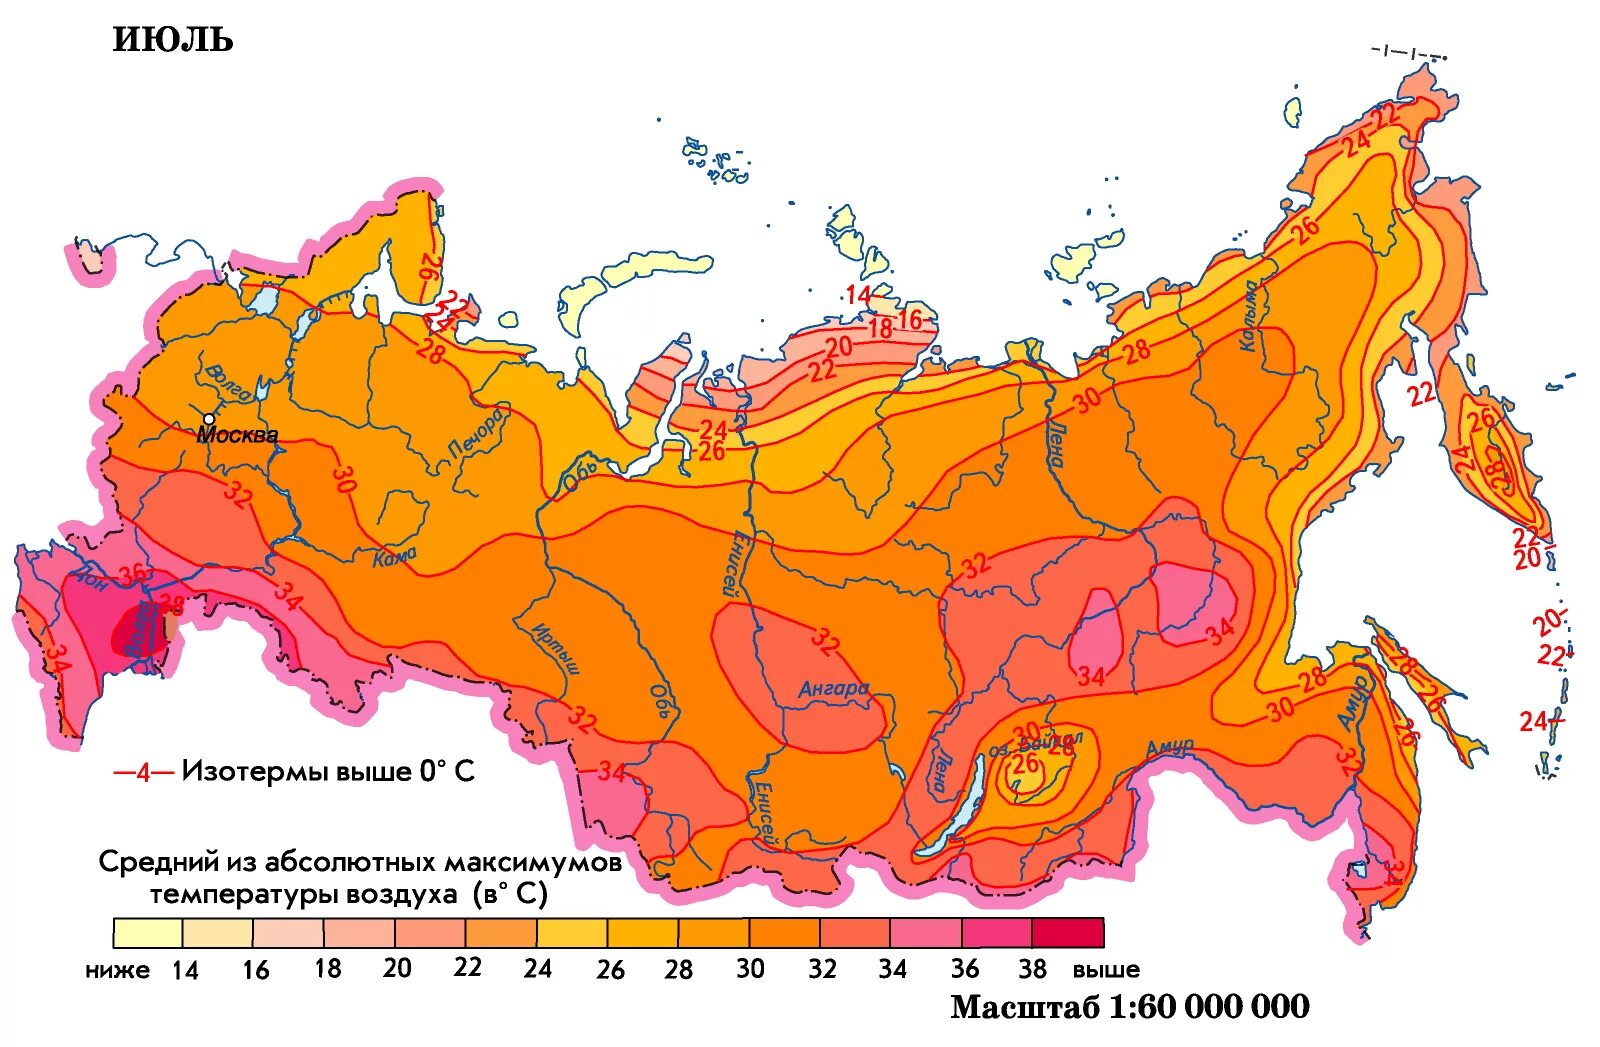 Температура на востоке россии. Абсолютный максимум температуры в России. Карта температур. Карта среднегодовых температур. Карта температуры воздуха в России.